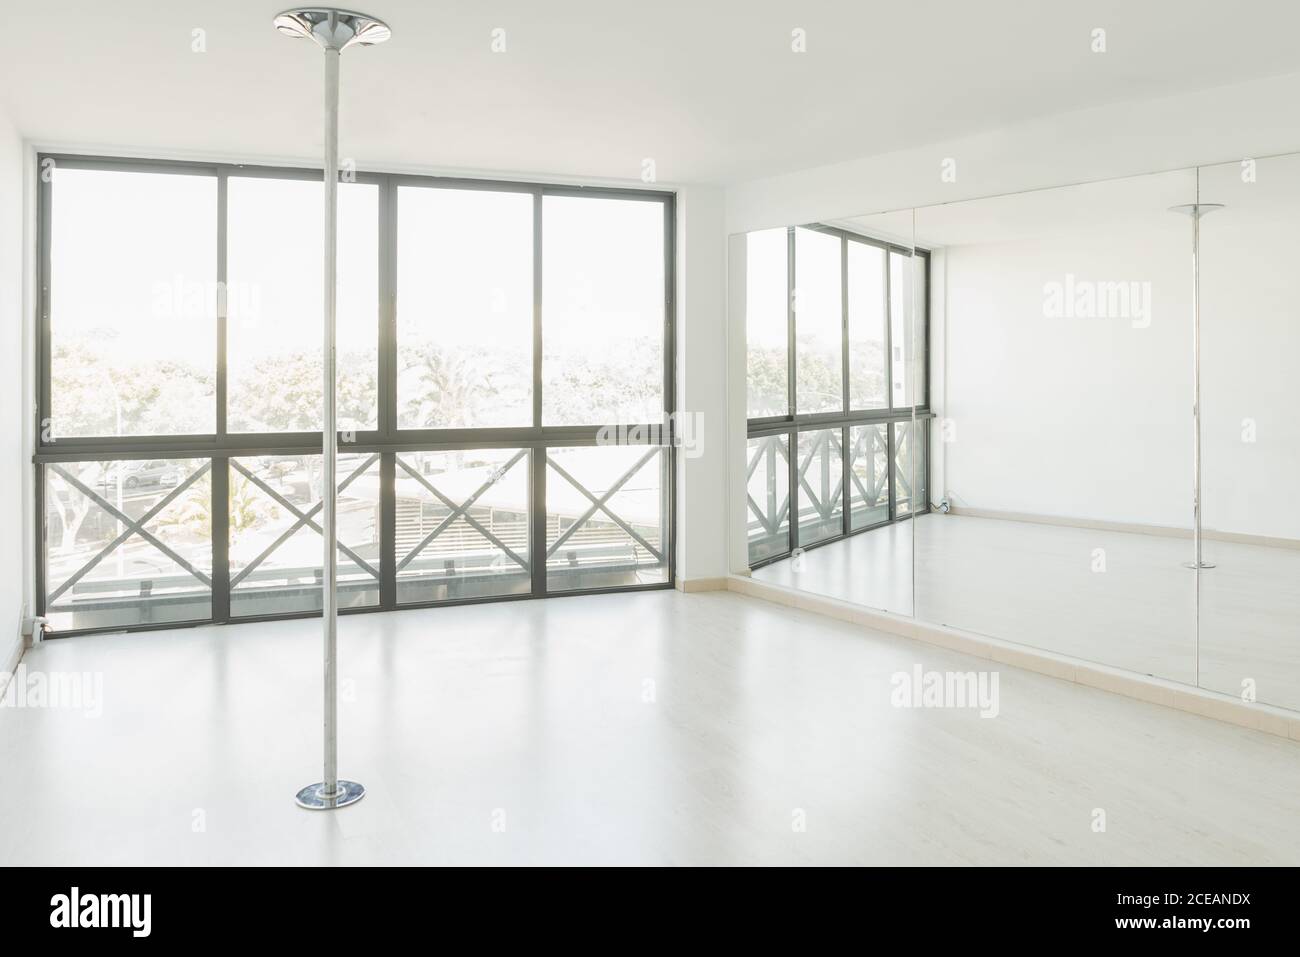 Pole Dance Studio mit großen Spiegeln und Fenstern im Licht Zimmer Stockfoto